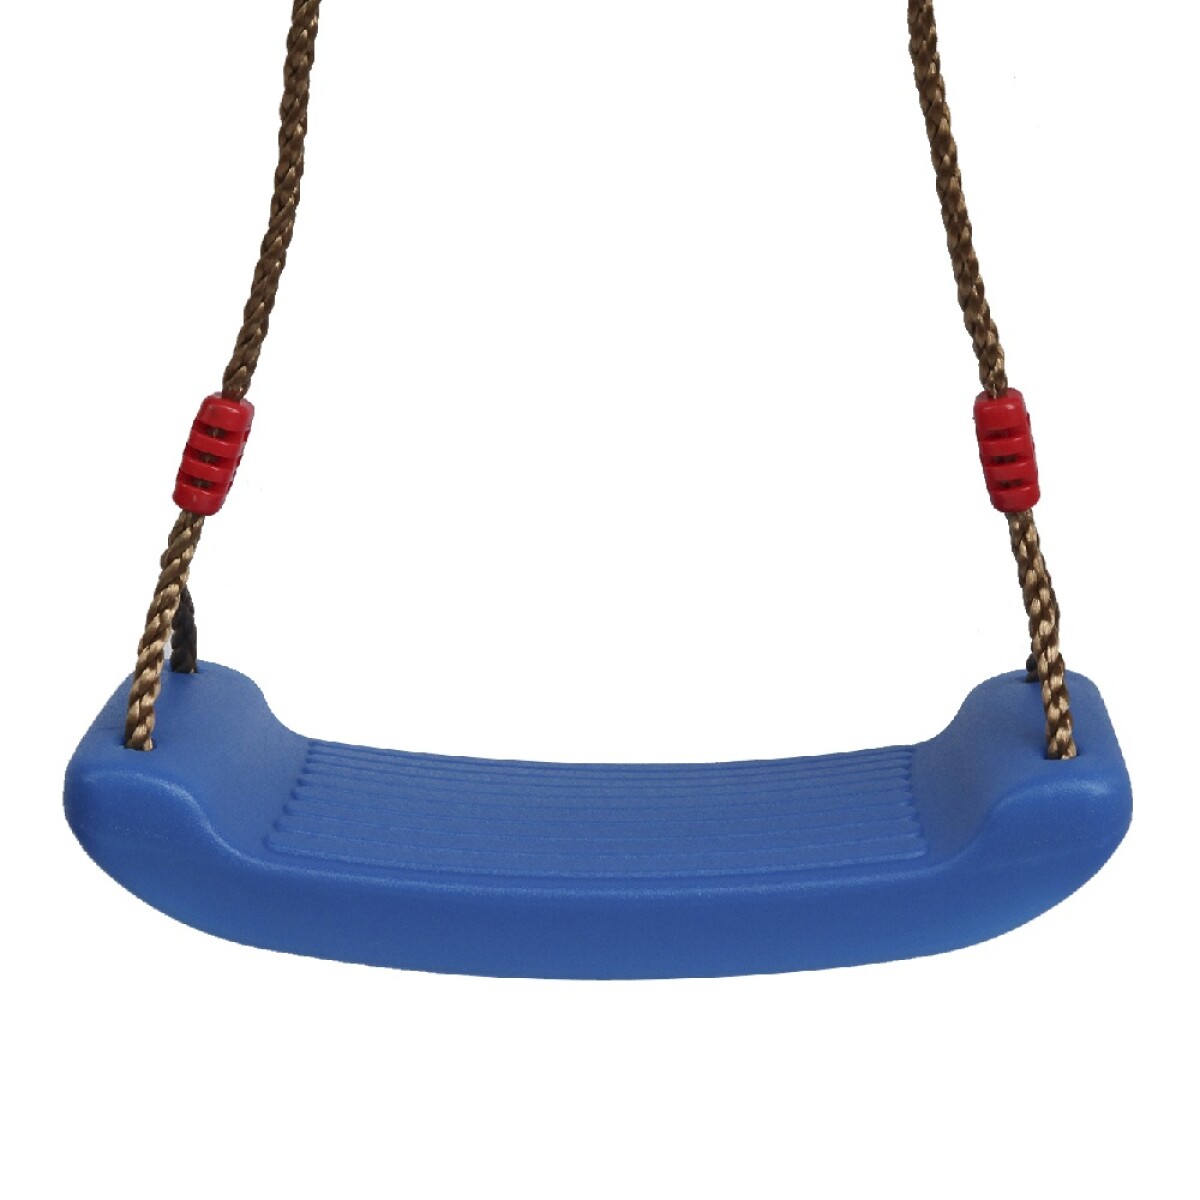 Hamaca Infantil Plástico Rígido c/Cuerdas Gruesas Ajustables - Azul 